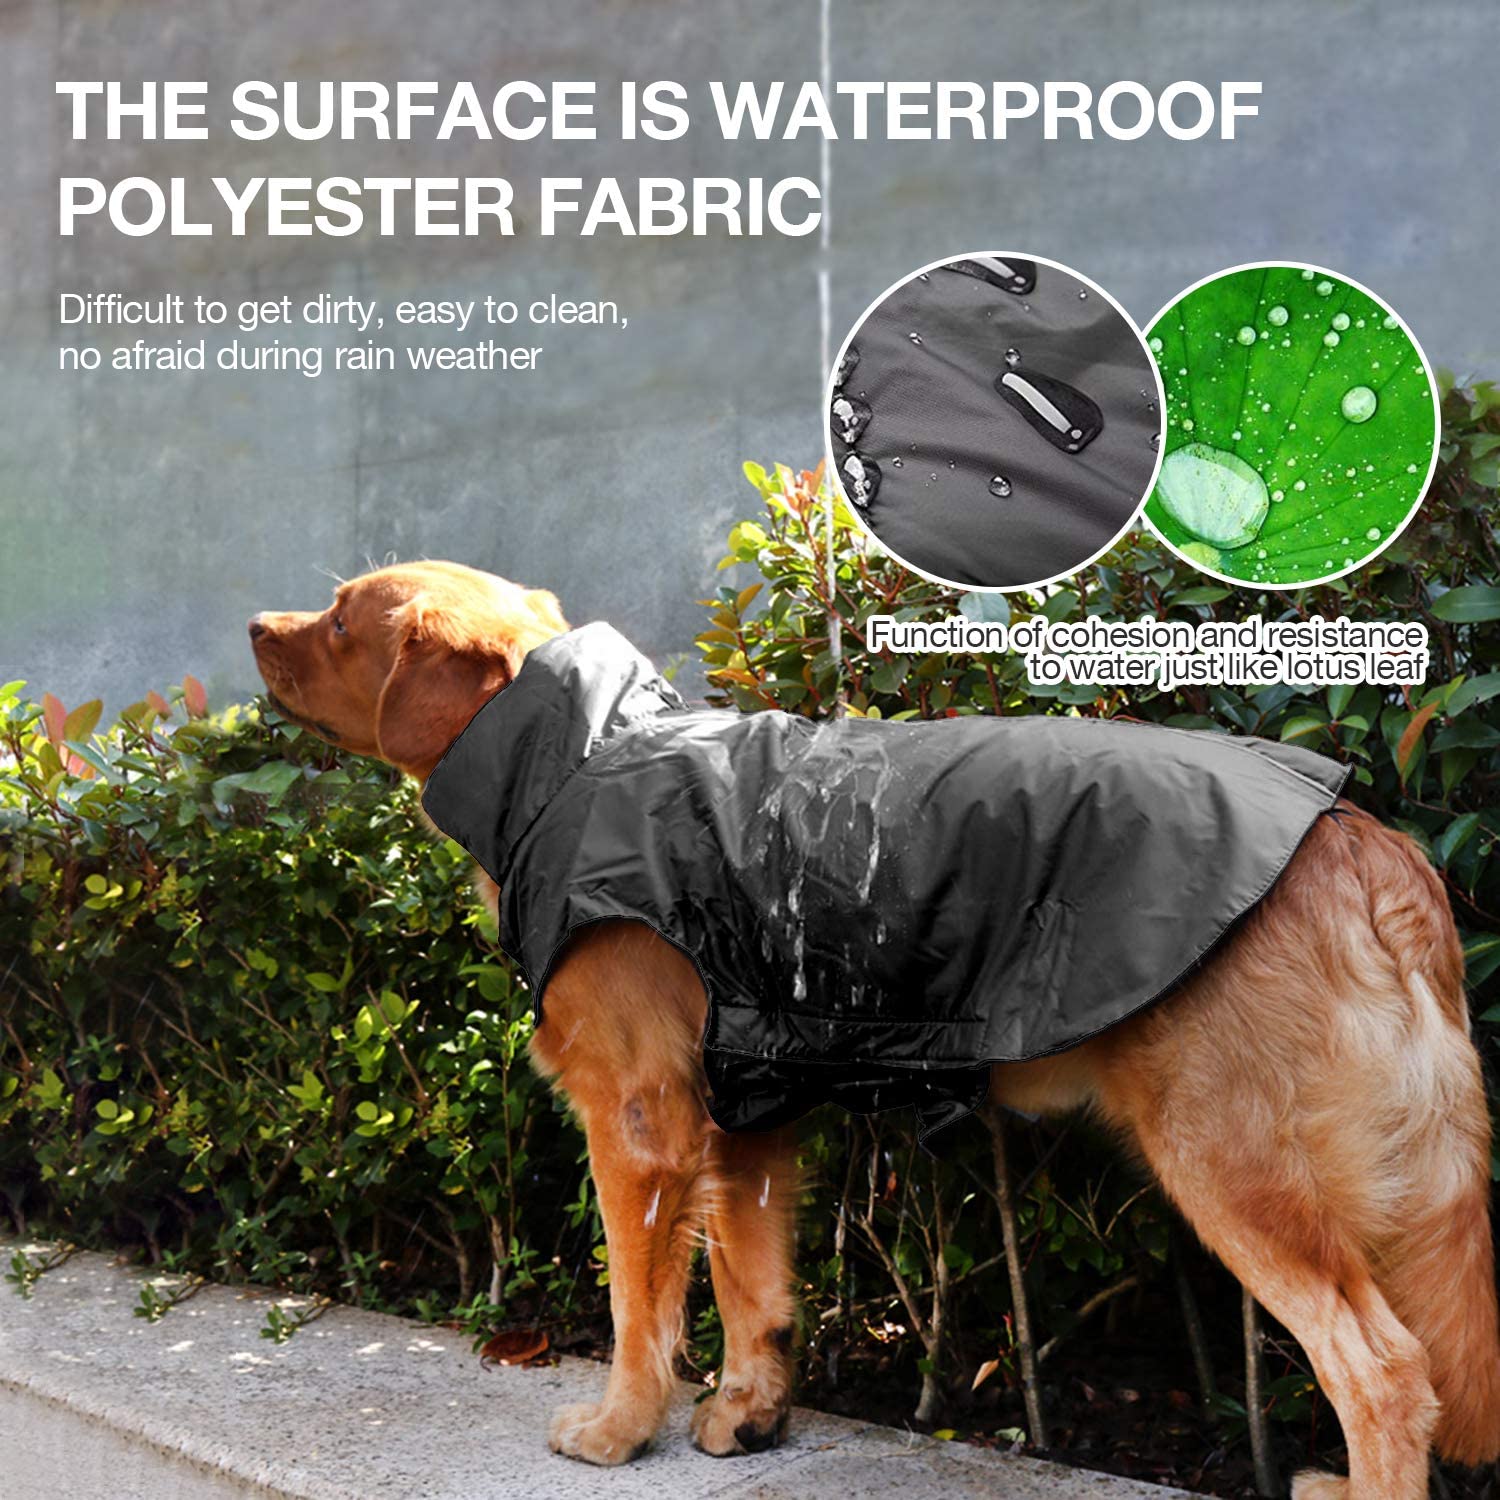  ژاکت ضد آب سگ بسیار سبک وزن است، آستر داخلی نرم و گرم است